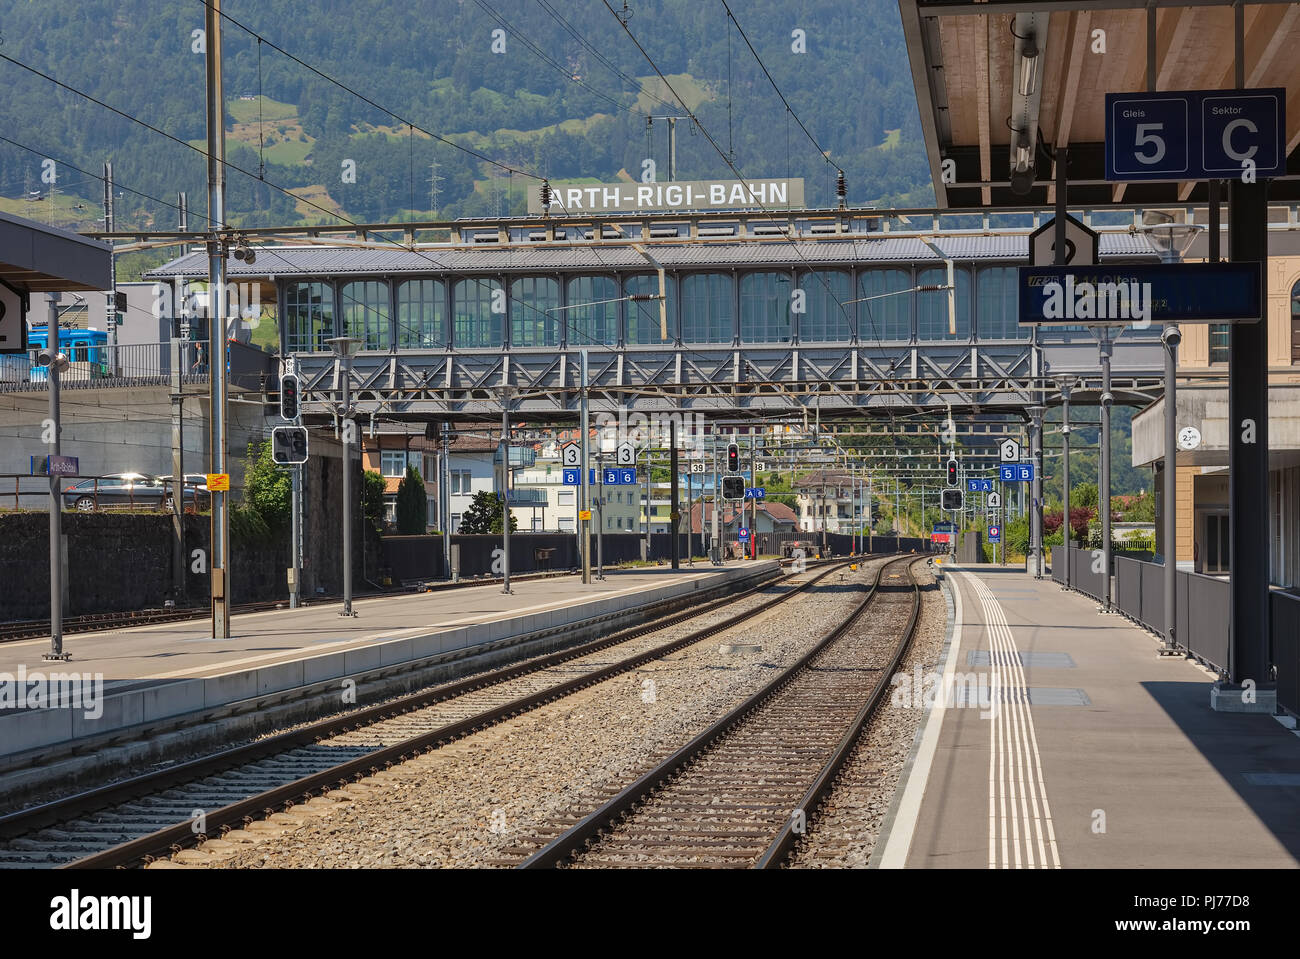 ArthRigiBahn stazione ferroviaria della Svizzera, vista